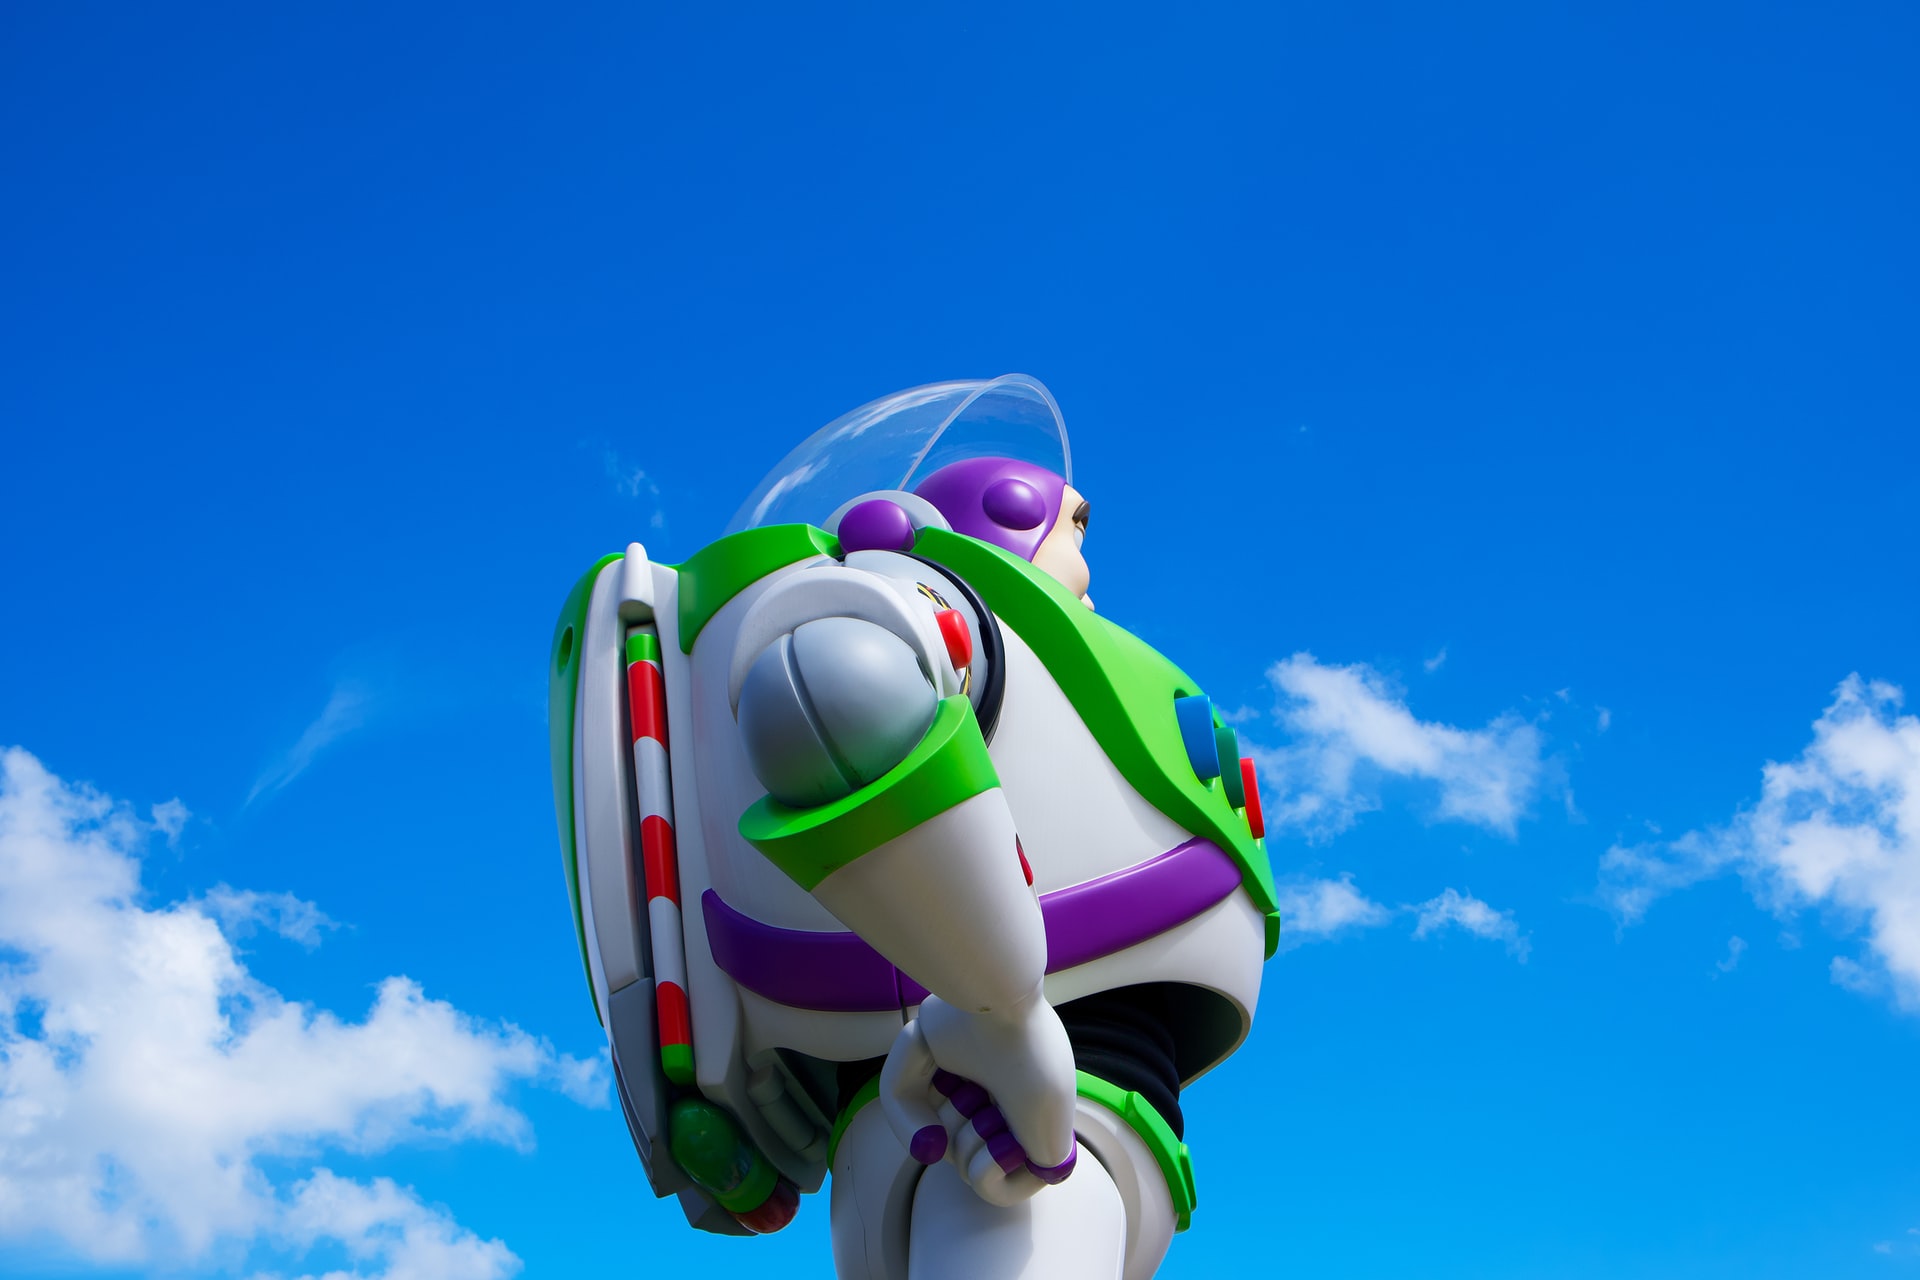 Buzz Lightyear toy